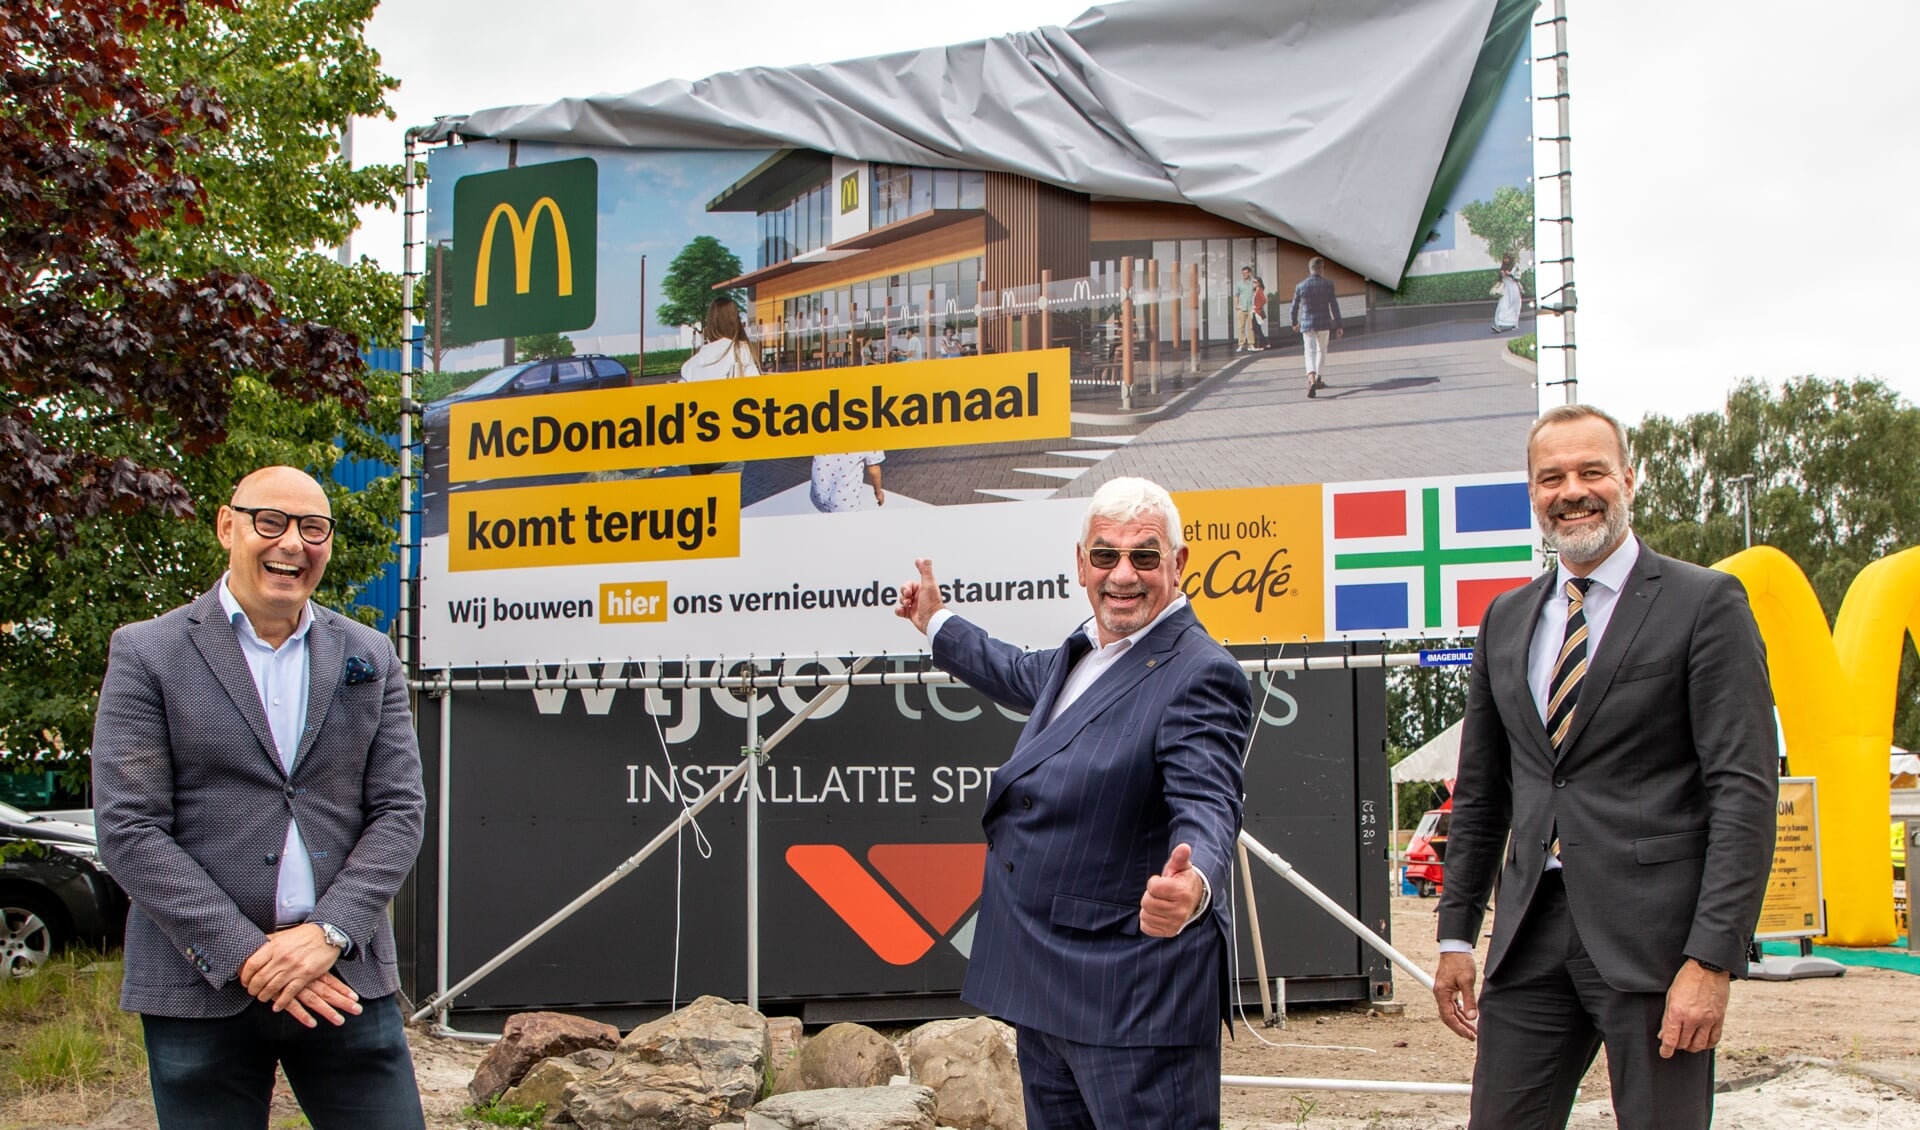 Jos van Kempen (Director Franchising & Development McDonald's Nederland), André Berendsen (franchisenemer McDonald's) en Klaas Sloots (burgemeester Stadskanaal) bij het bouwbord.